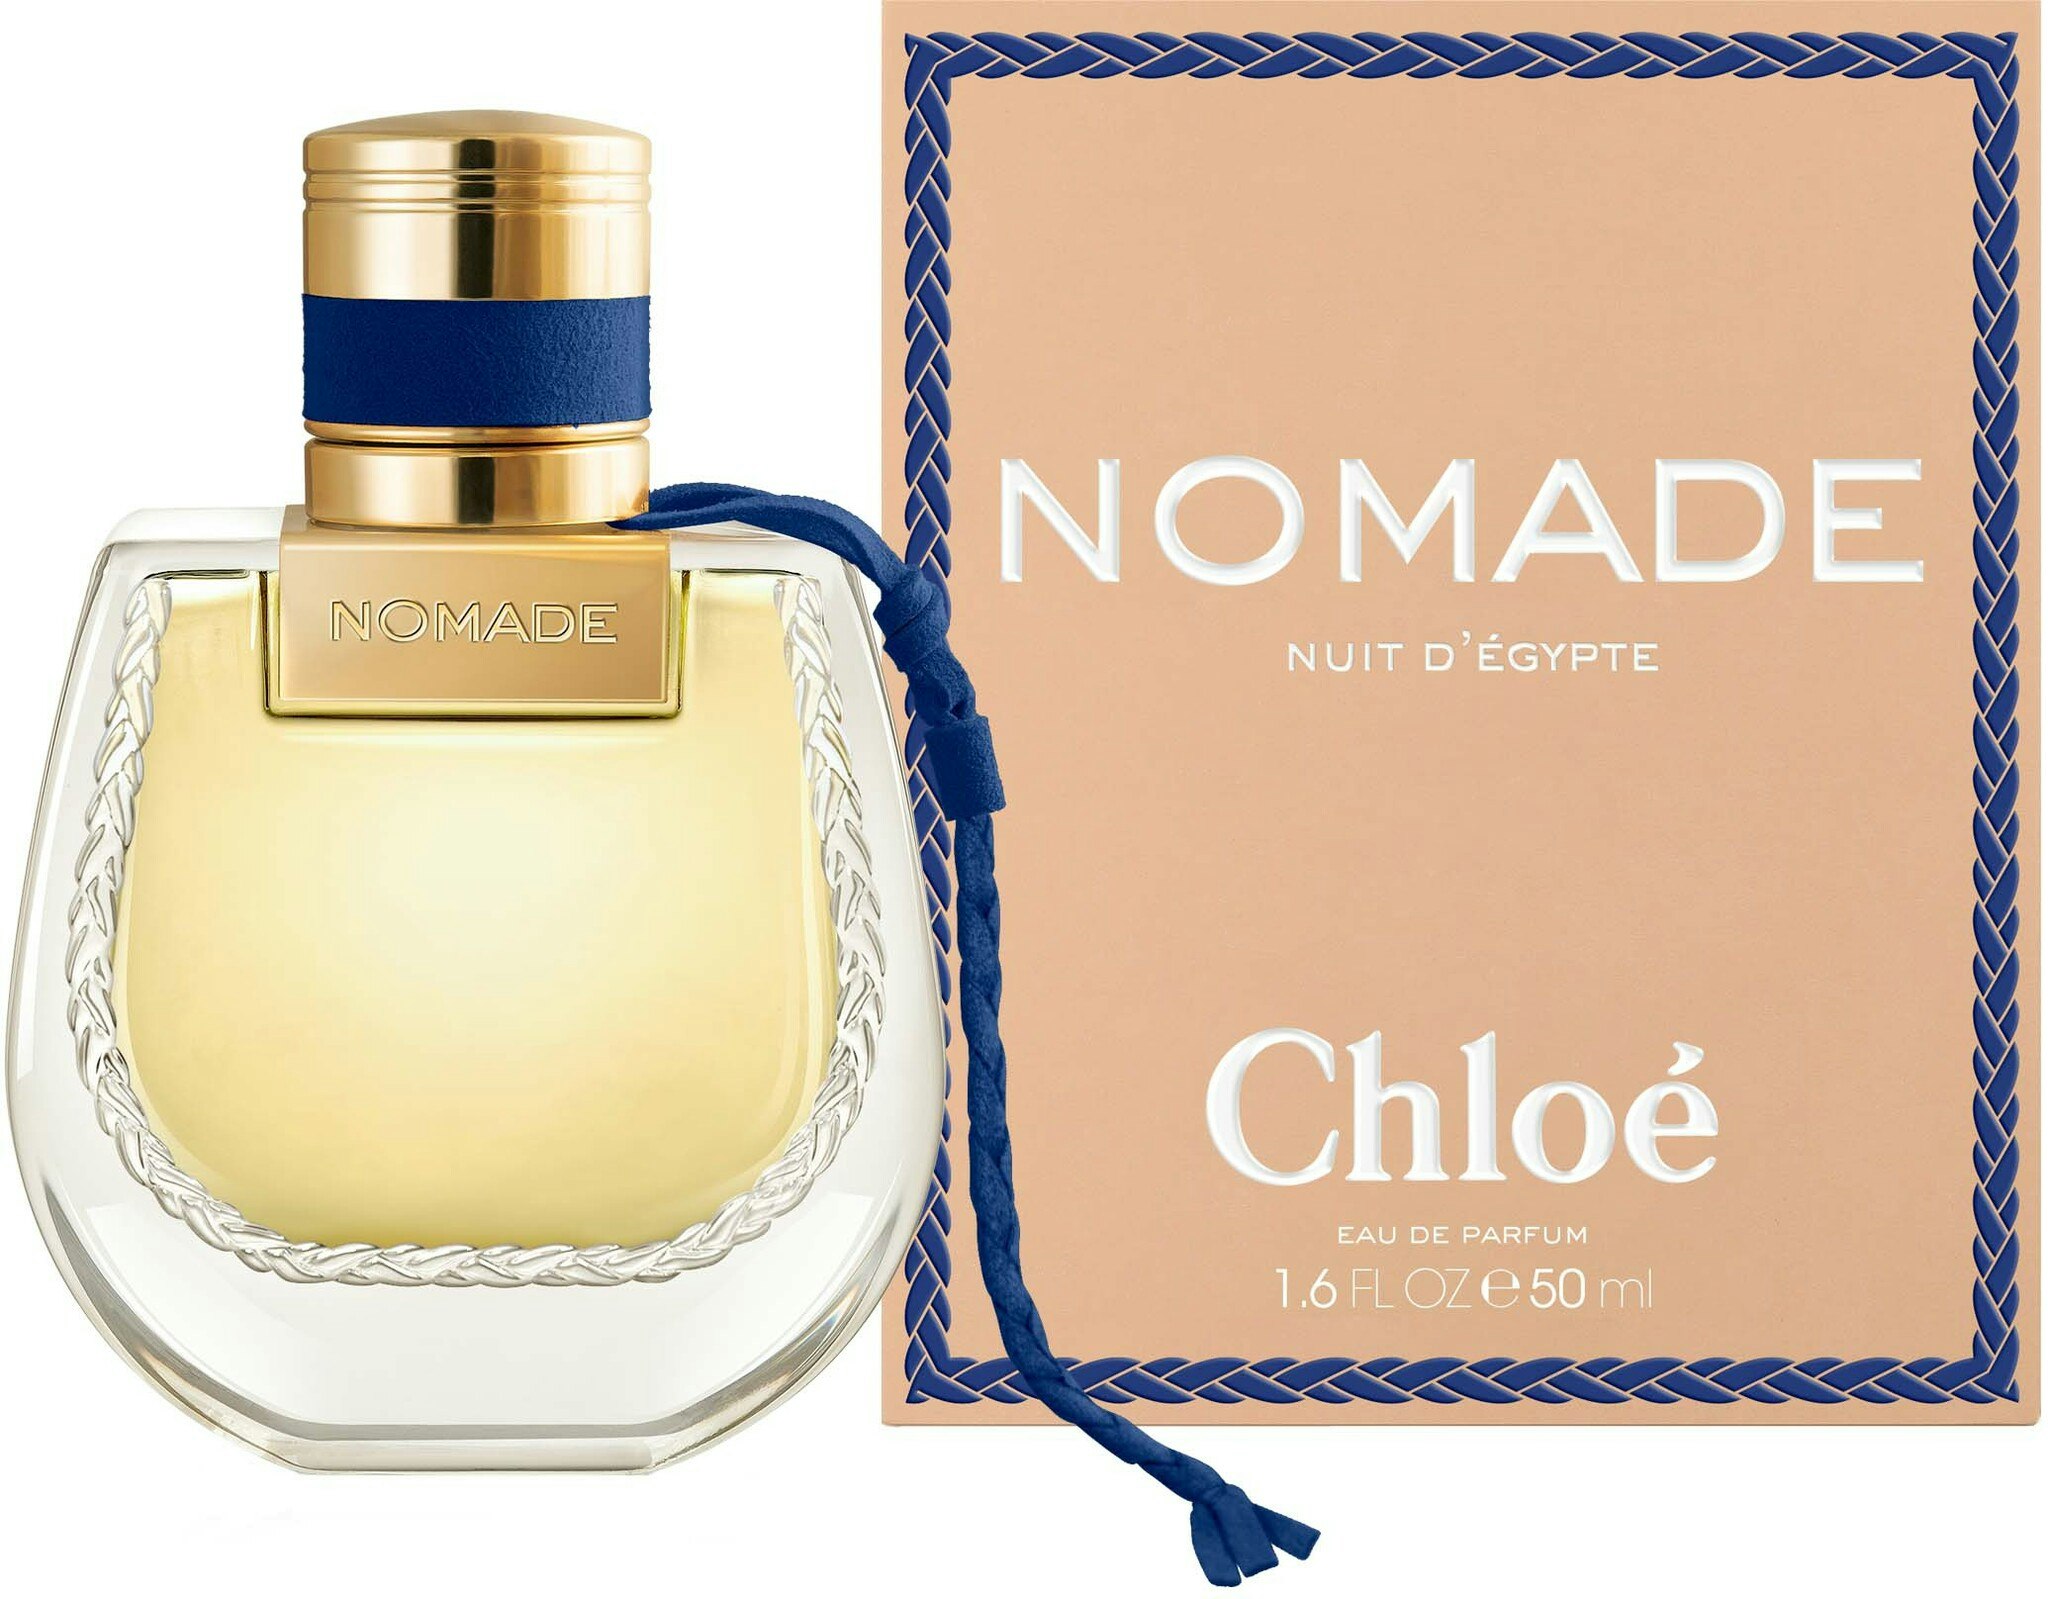 Chloé Nomade Nuit D'Egypte Eau De Parfume